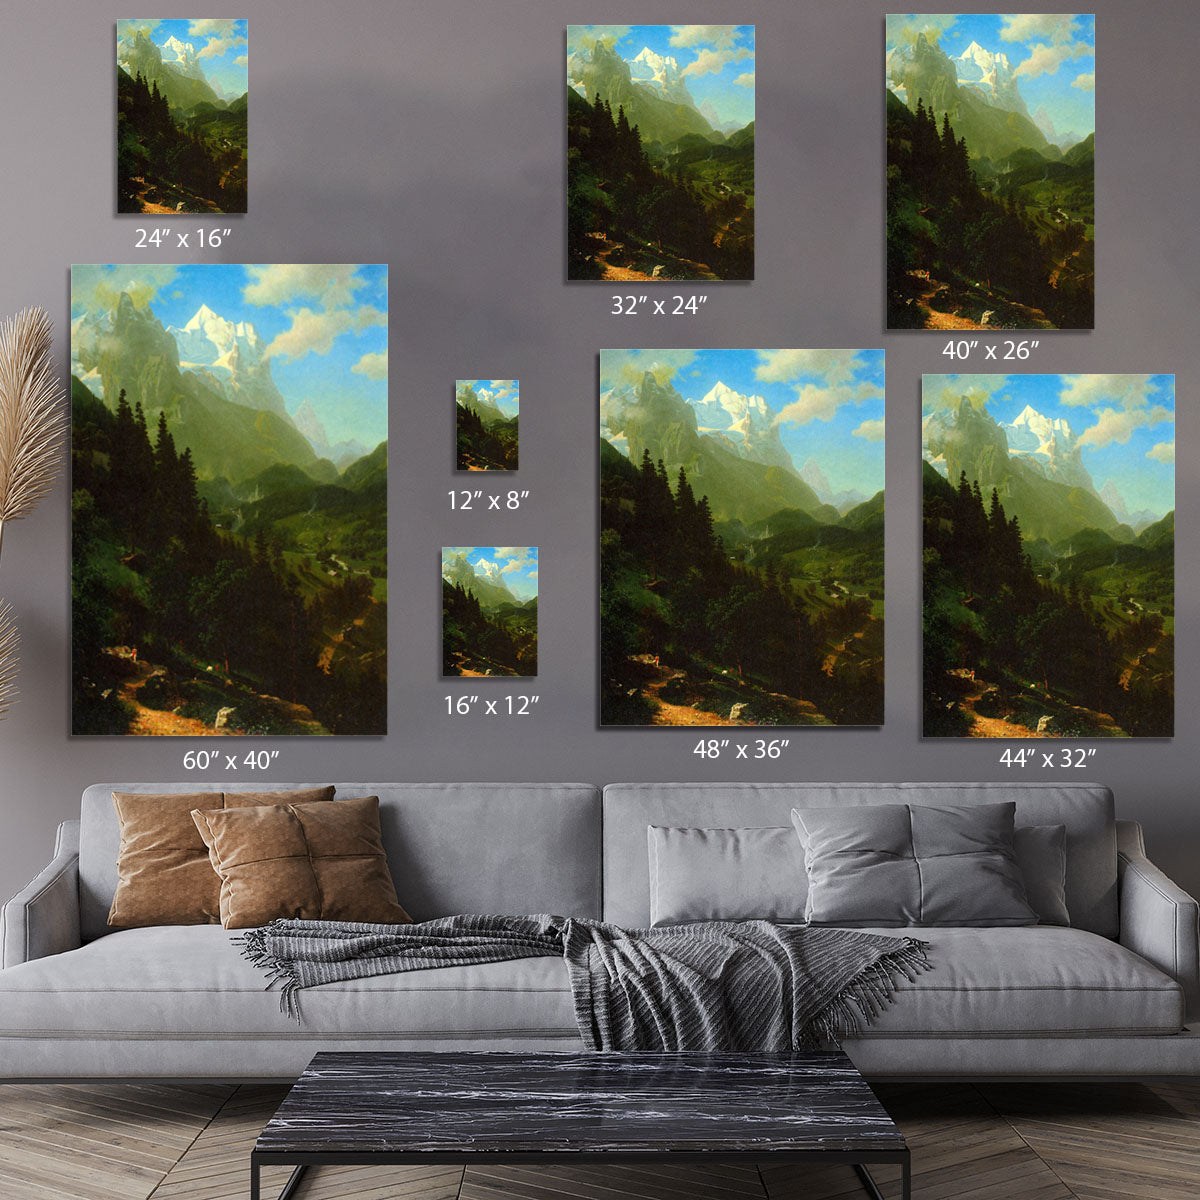 Matterhorn by Bierstadt Canvas Print or Poster - Canvas Art Rocks - 7